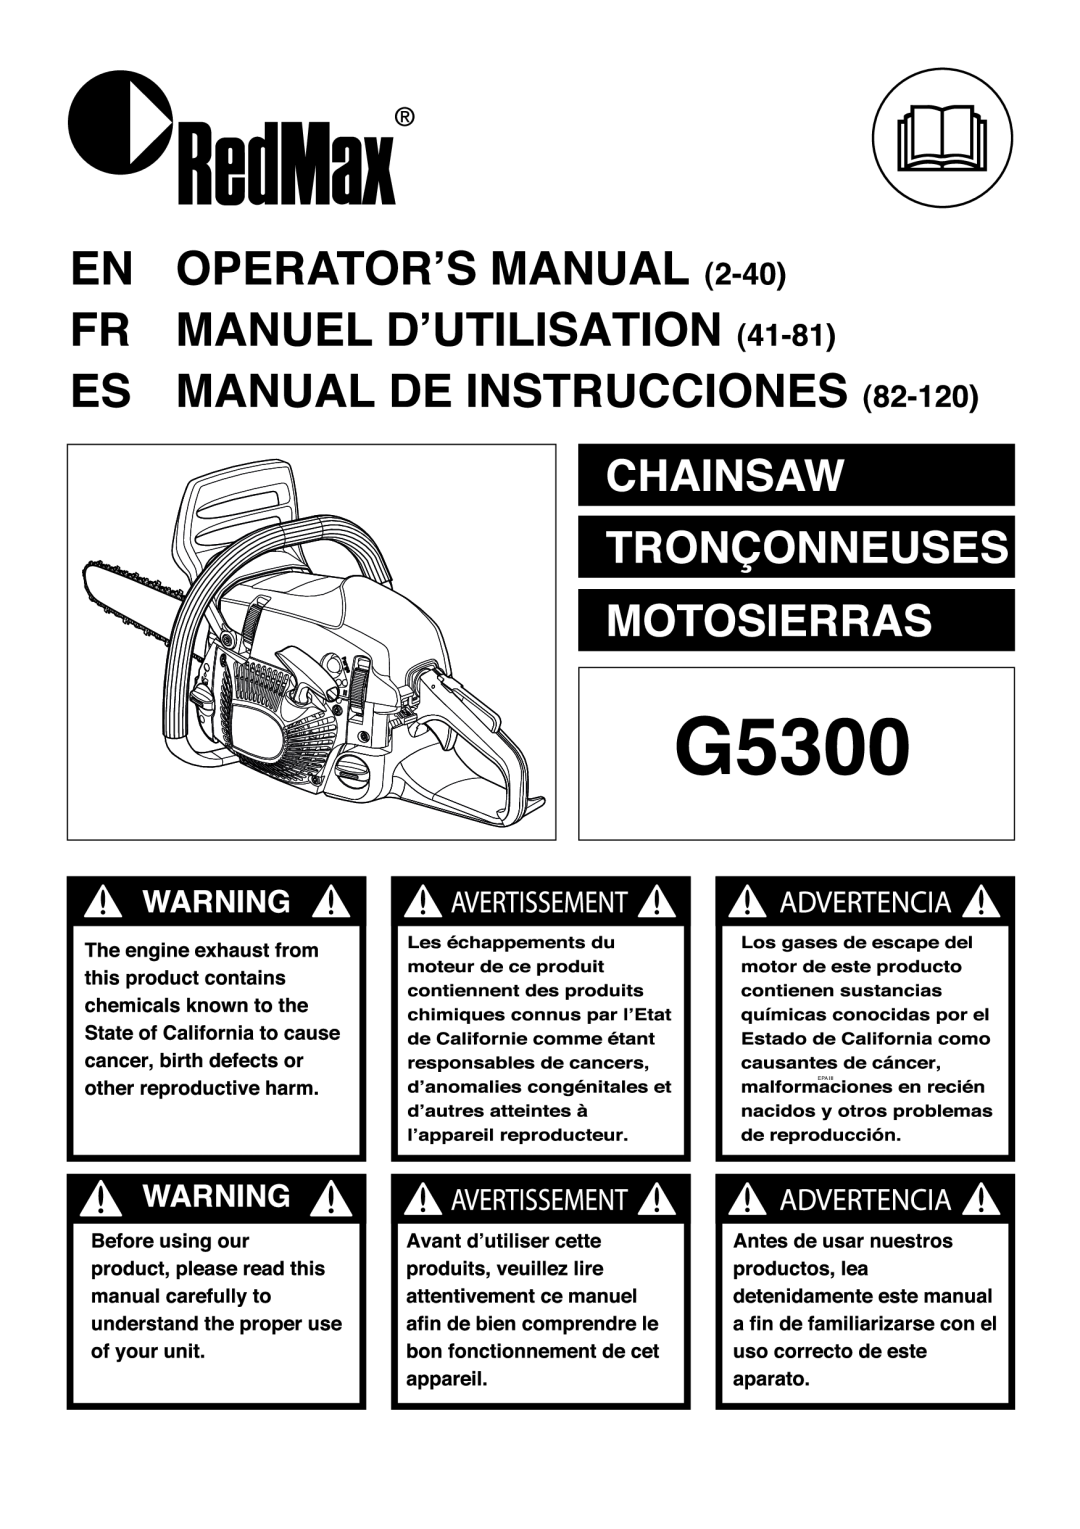 RedMax G5300 manual 